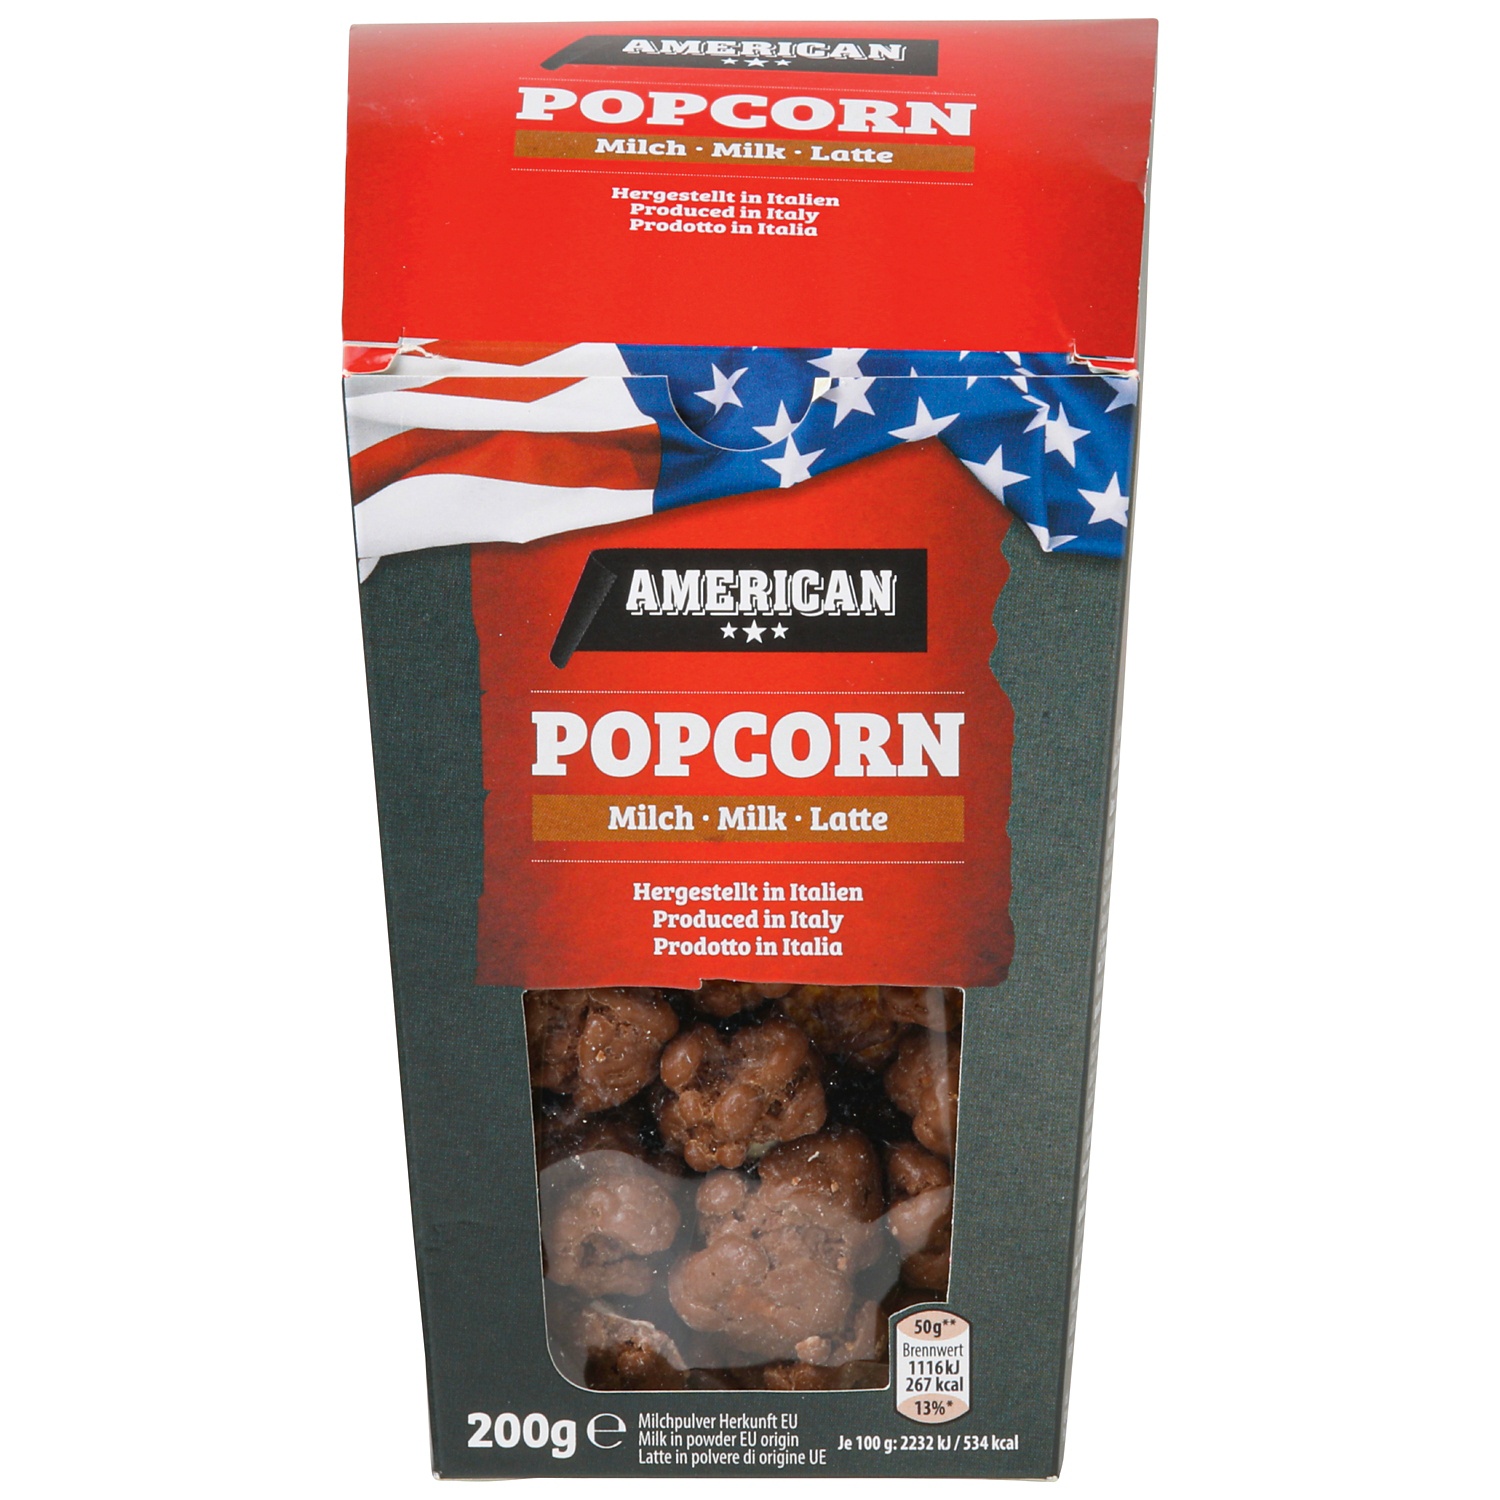 AMERICAN Popcorn mit feiner Schokolade überzogen, Milchschoko